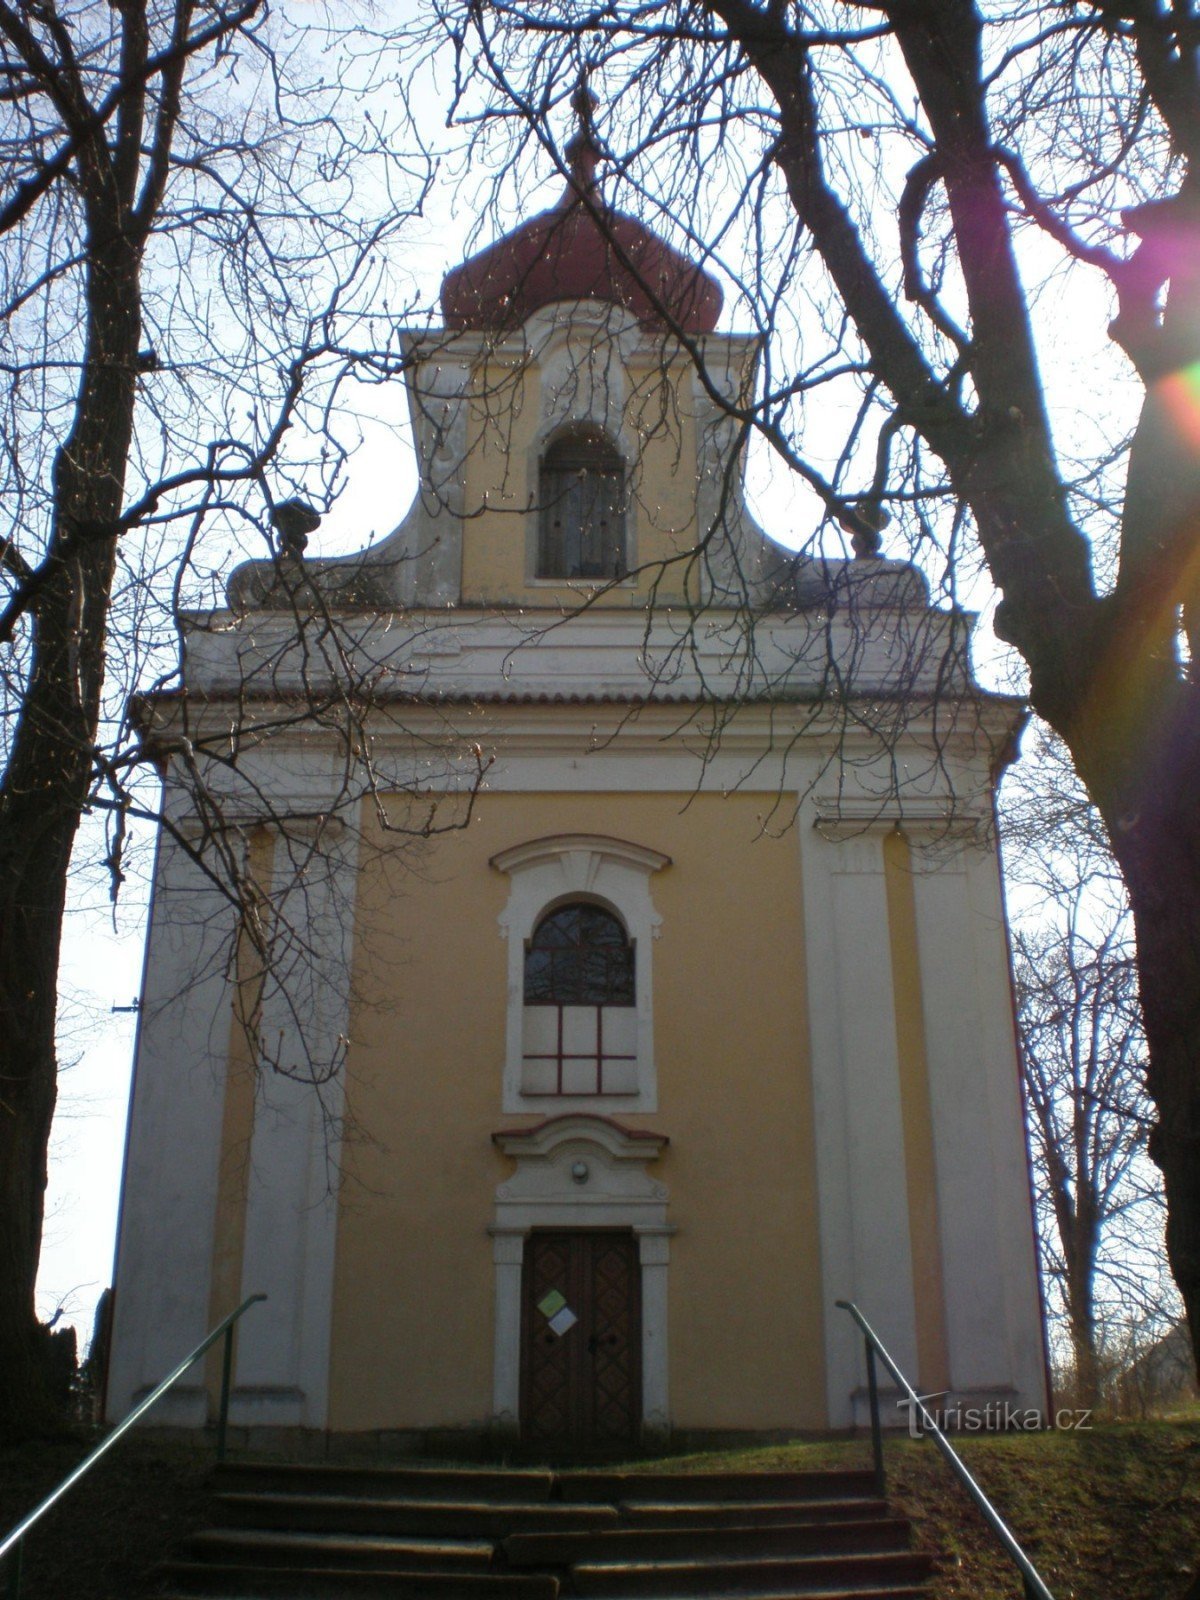 Škvorec - nhà thờ St. Anne